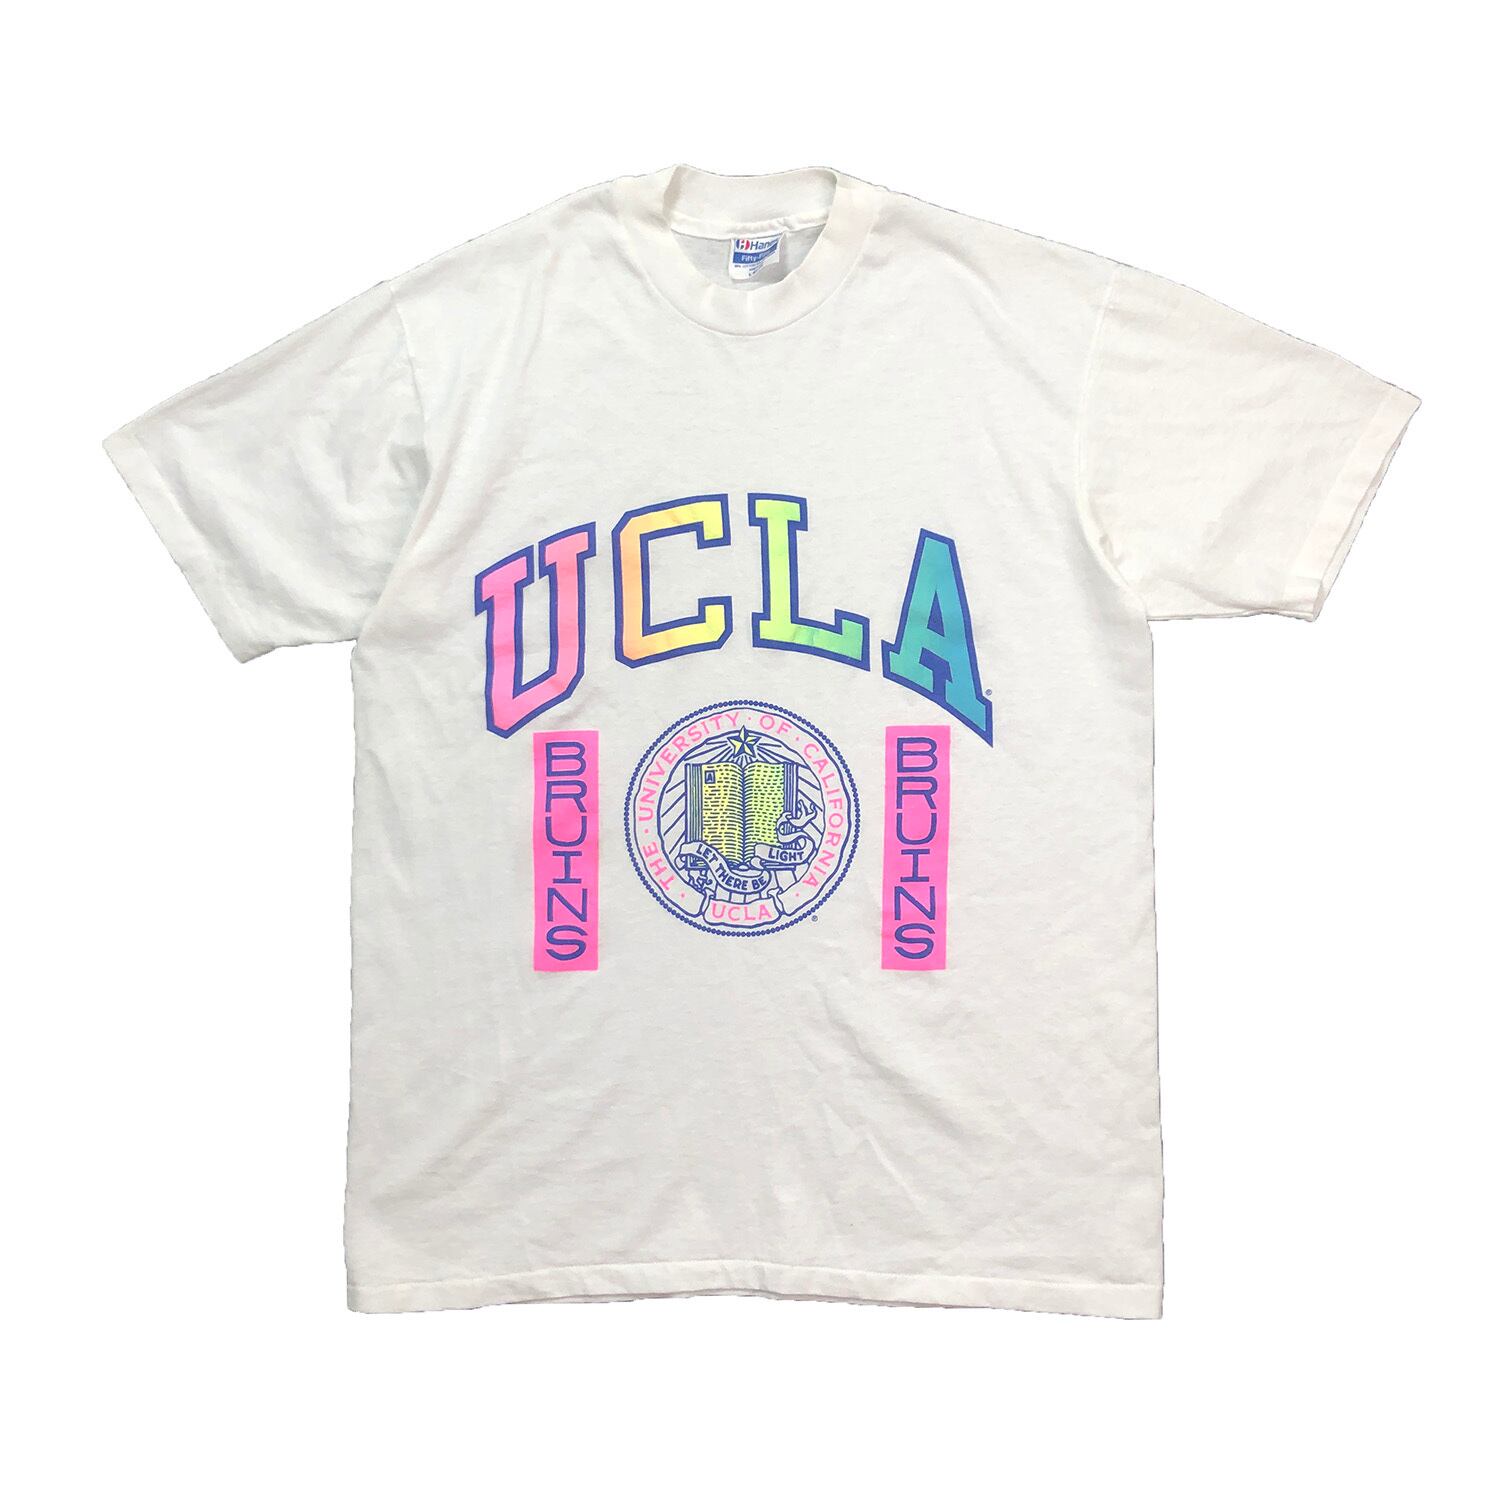 USA 80s～90s USA製 クロスステッチ刺繍 Tシャツ オールド